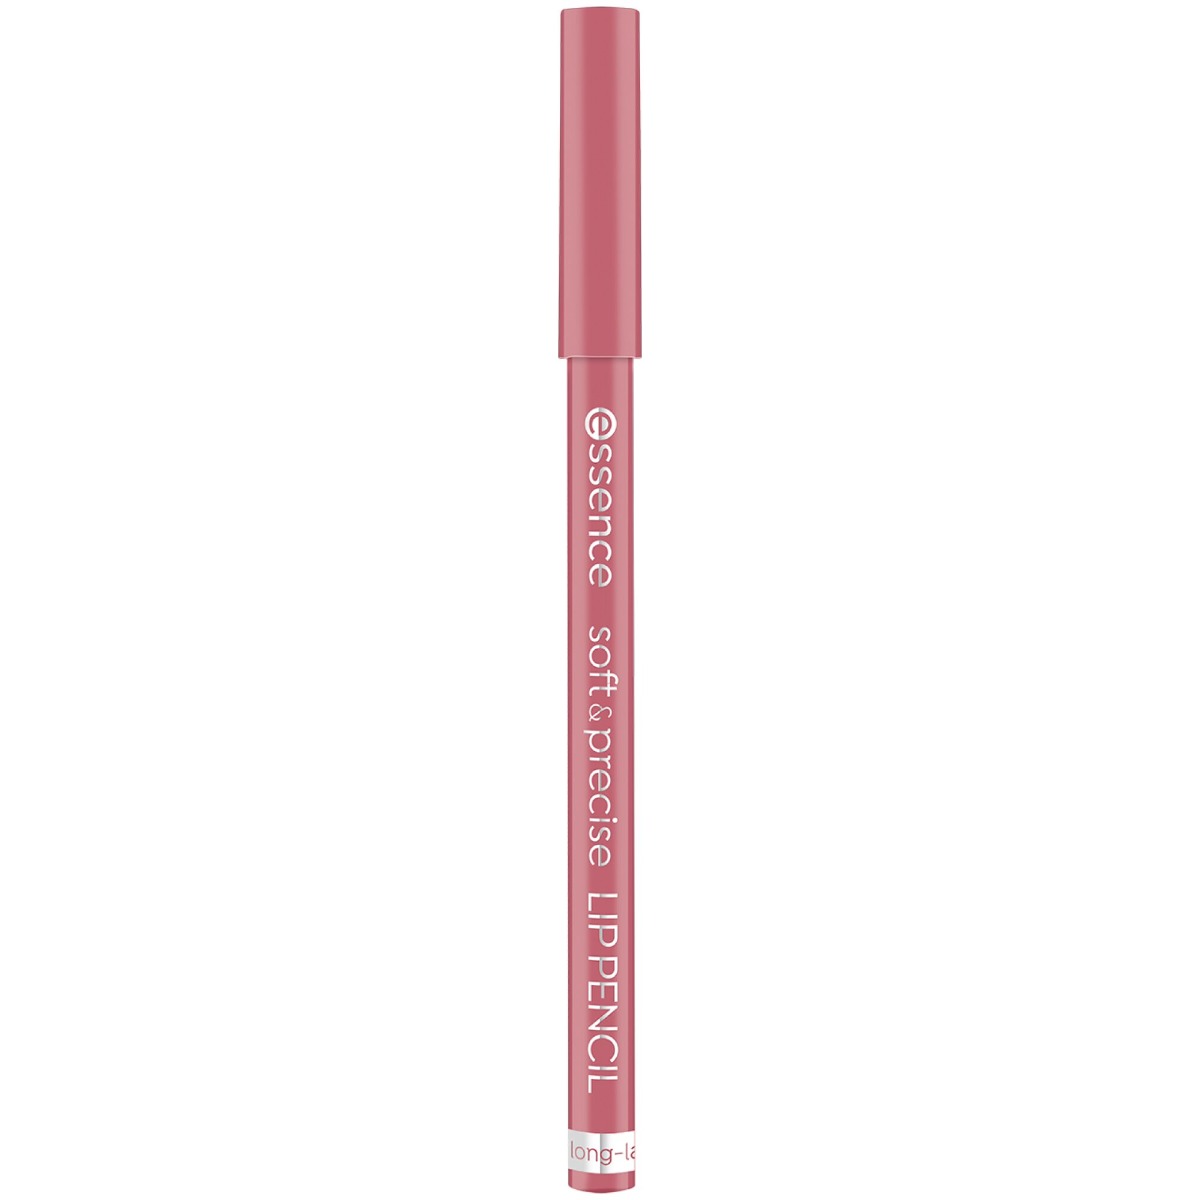 Creion pentru buze Soft & Precise Lip Pencil 303 - Delicate, 0.78g, Essence